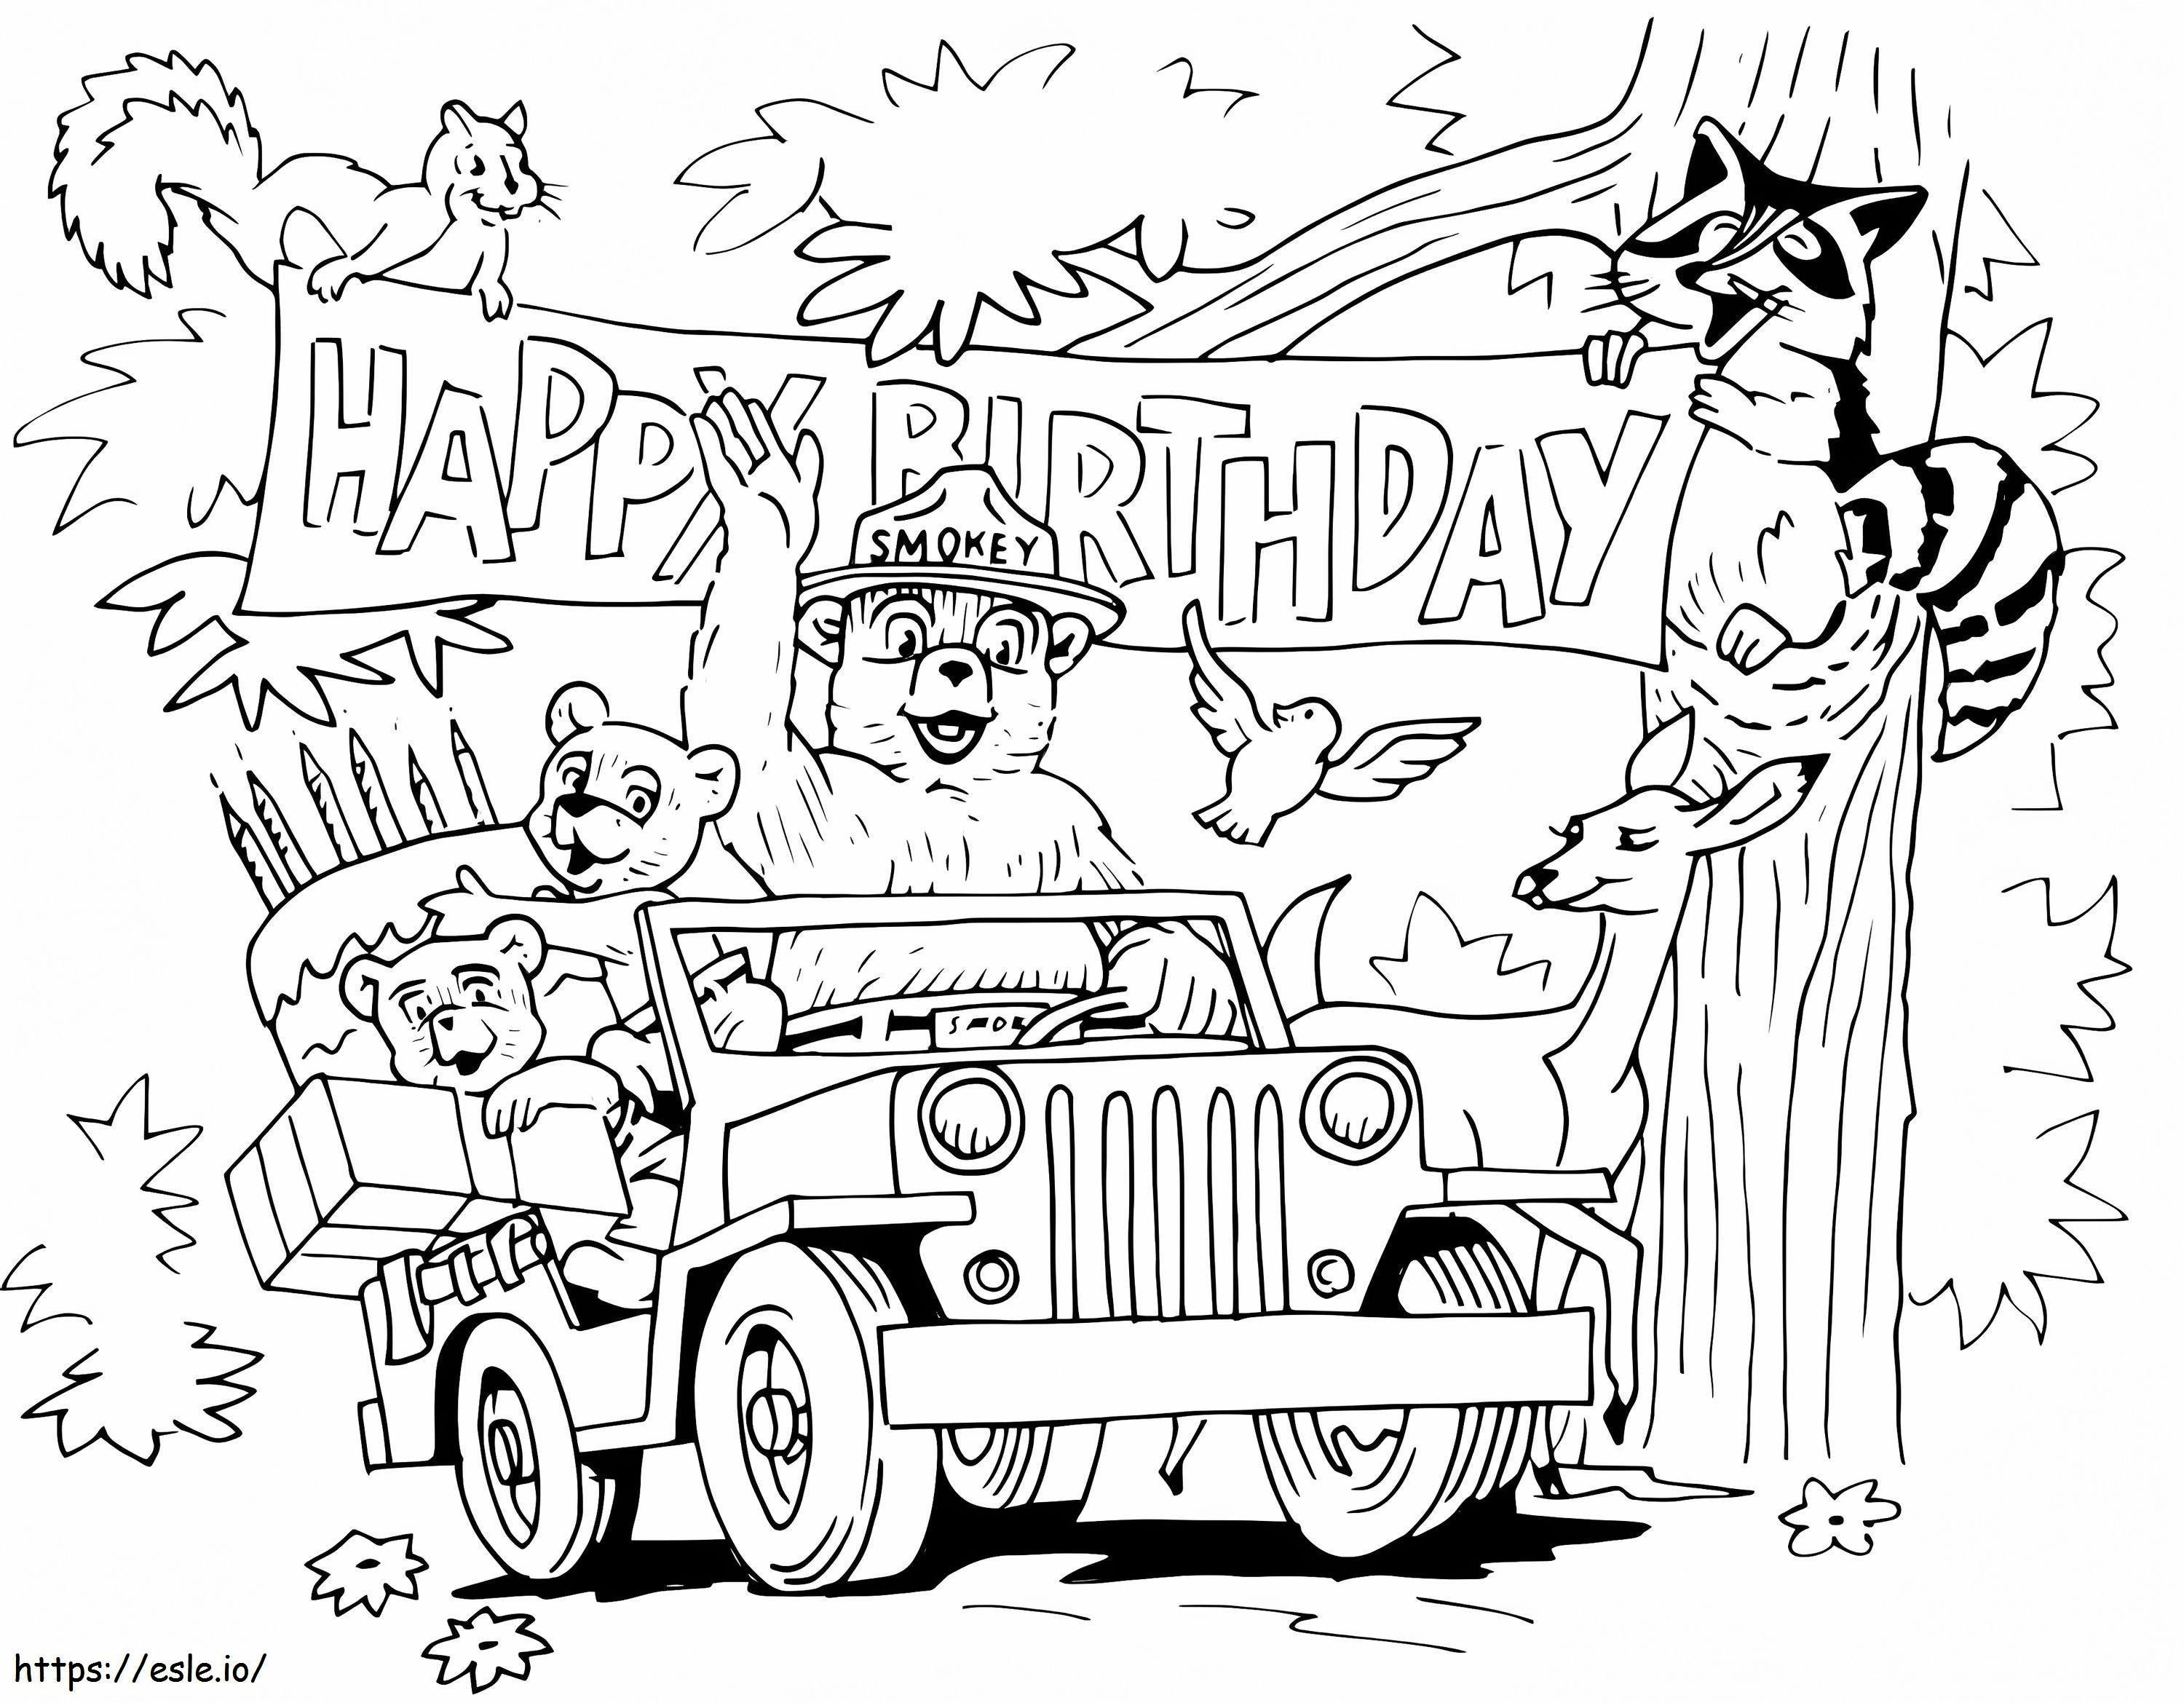 Feliz Cumpleaños Oso Smokey 1 para colorear